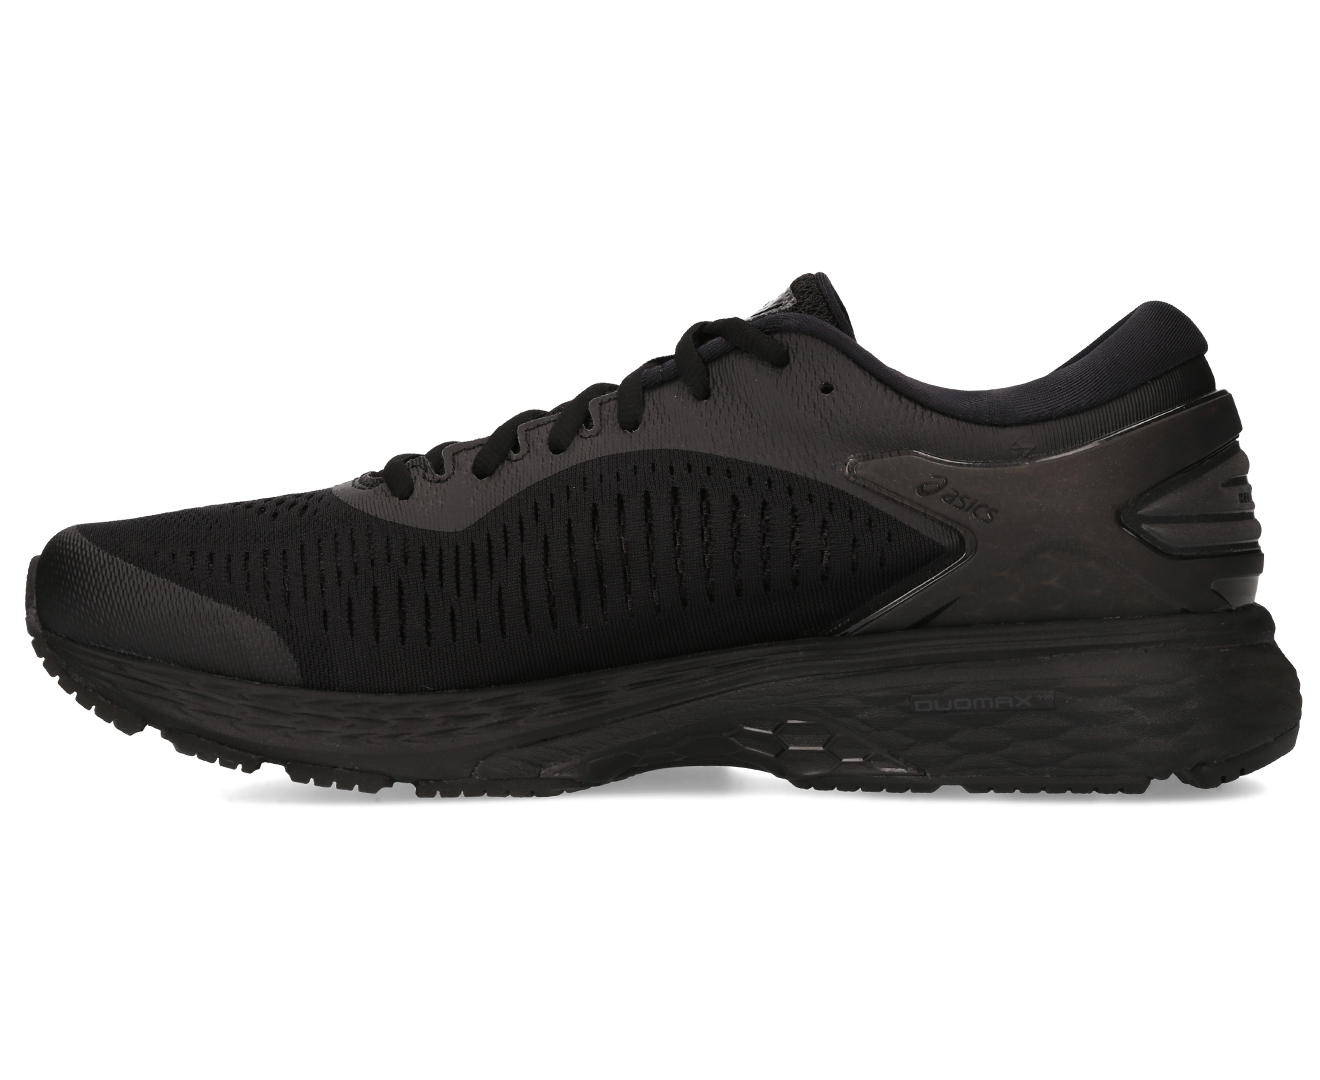 ASICS Kayano 25 Shoe for Mens - Black | Catch.com.au